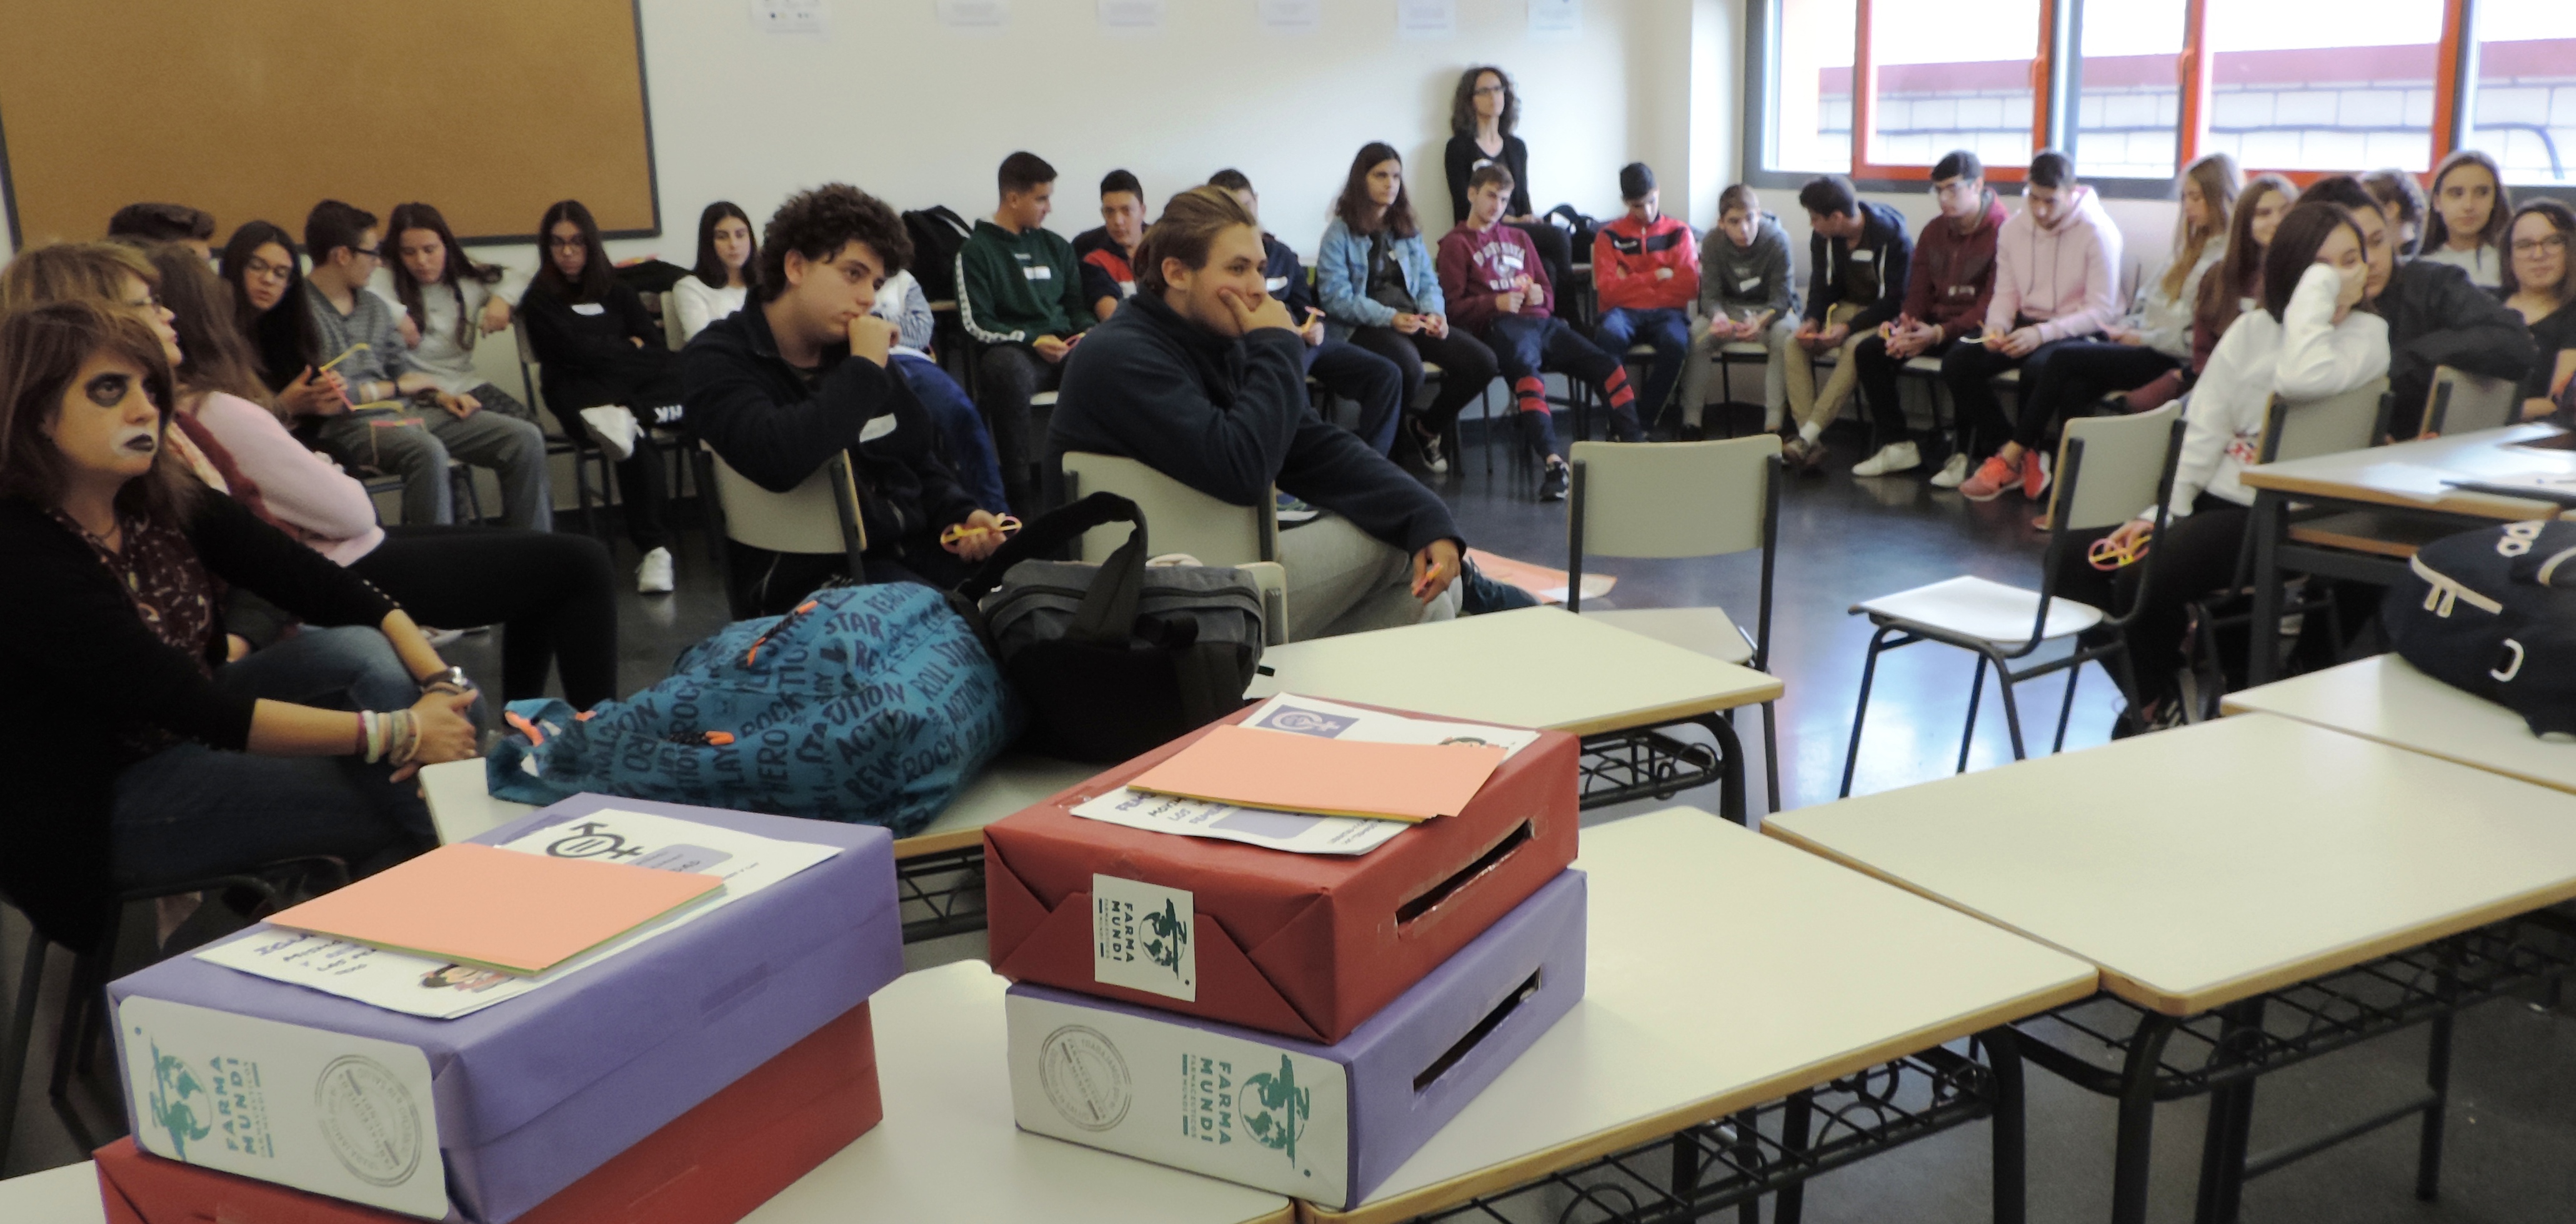 Adolescentes de Extremadura demandan más información en las aulas sobre equidad y feminismo